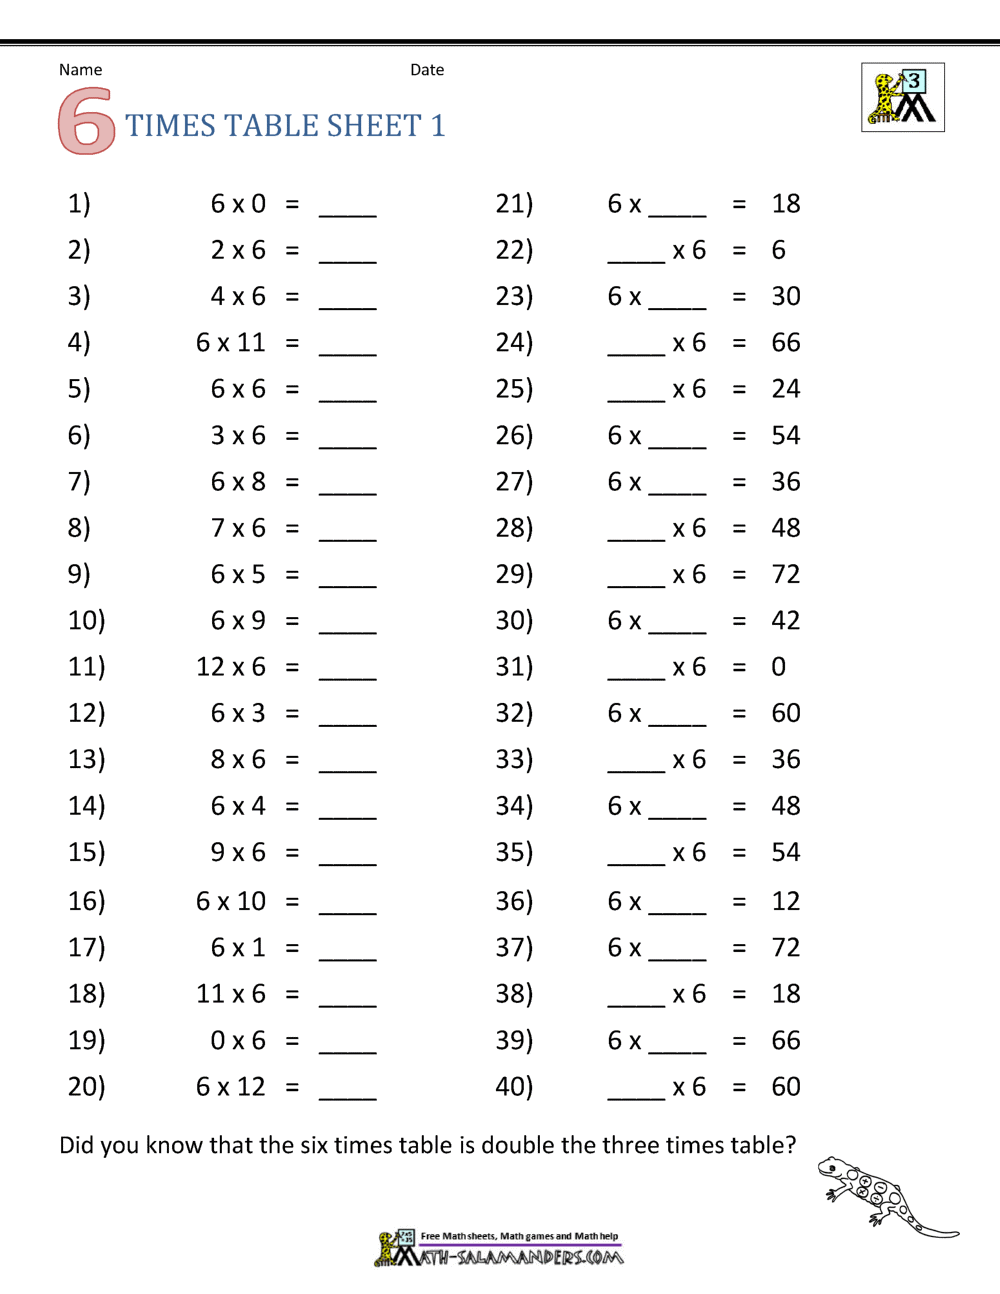 Multiplication Drill Sheets 22rd Grade Regarding Multiplying By 6 Worksheet